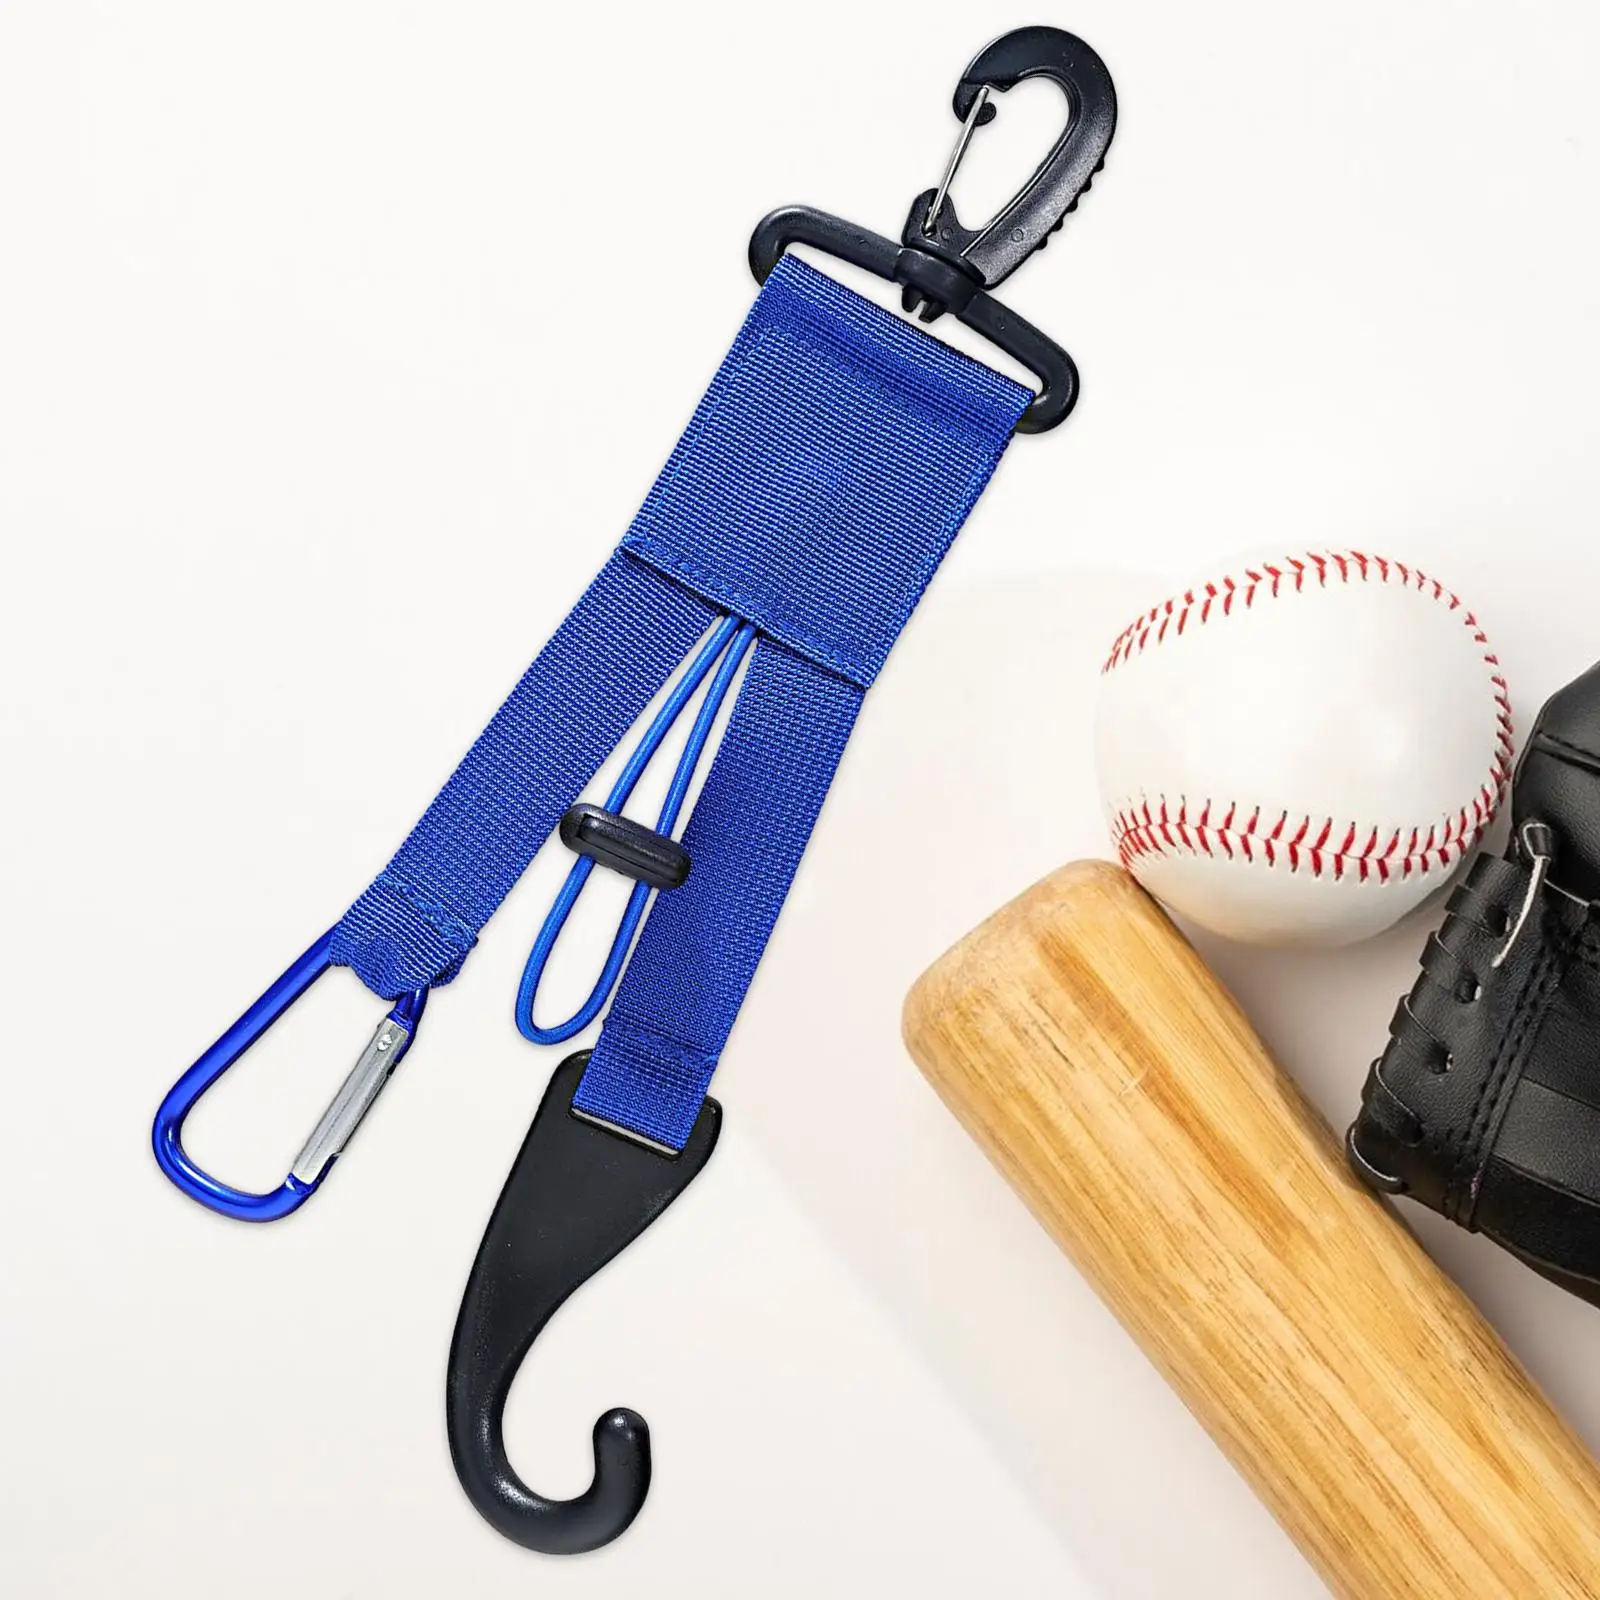 Dugout Gear Hanger, Dugout Bats Hanger, Keeps Your Glove Hat Bats Off The Ground, Attaches to Fence Baseball Dugout Organizer